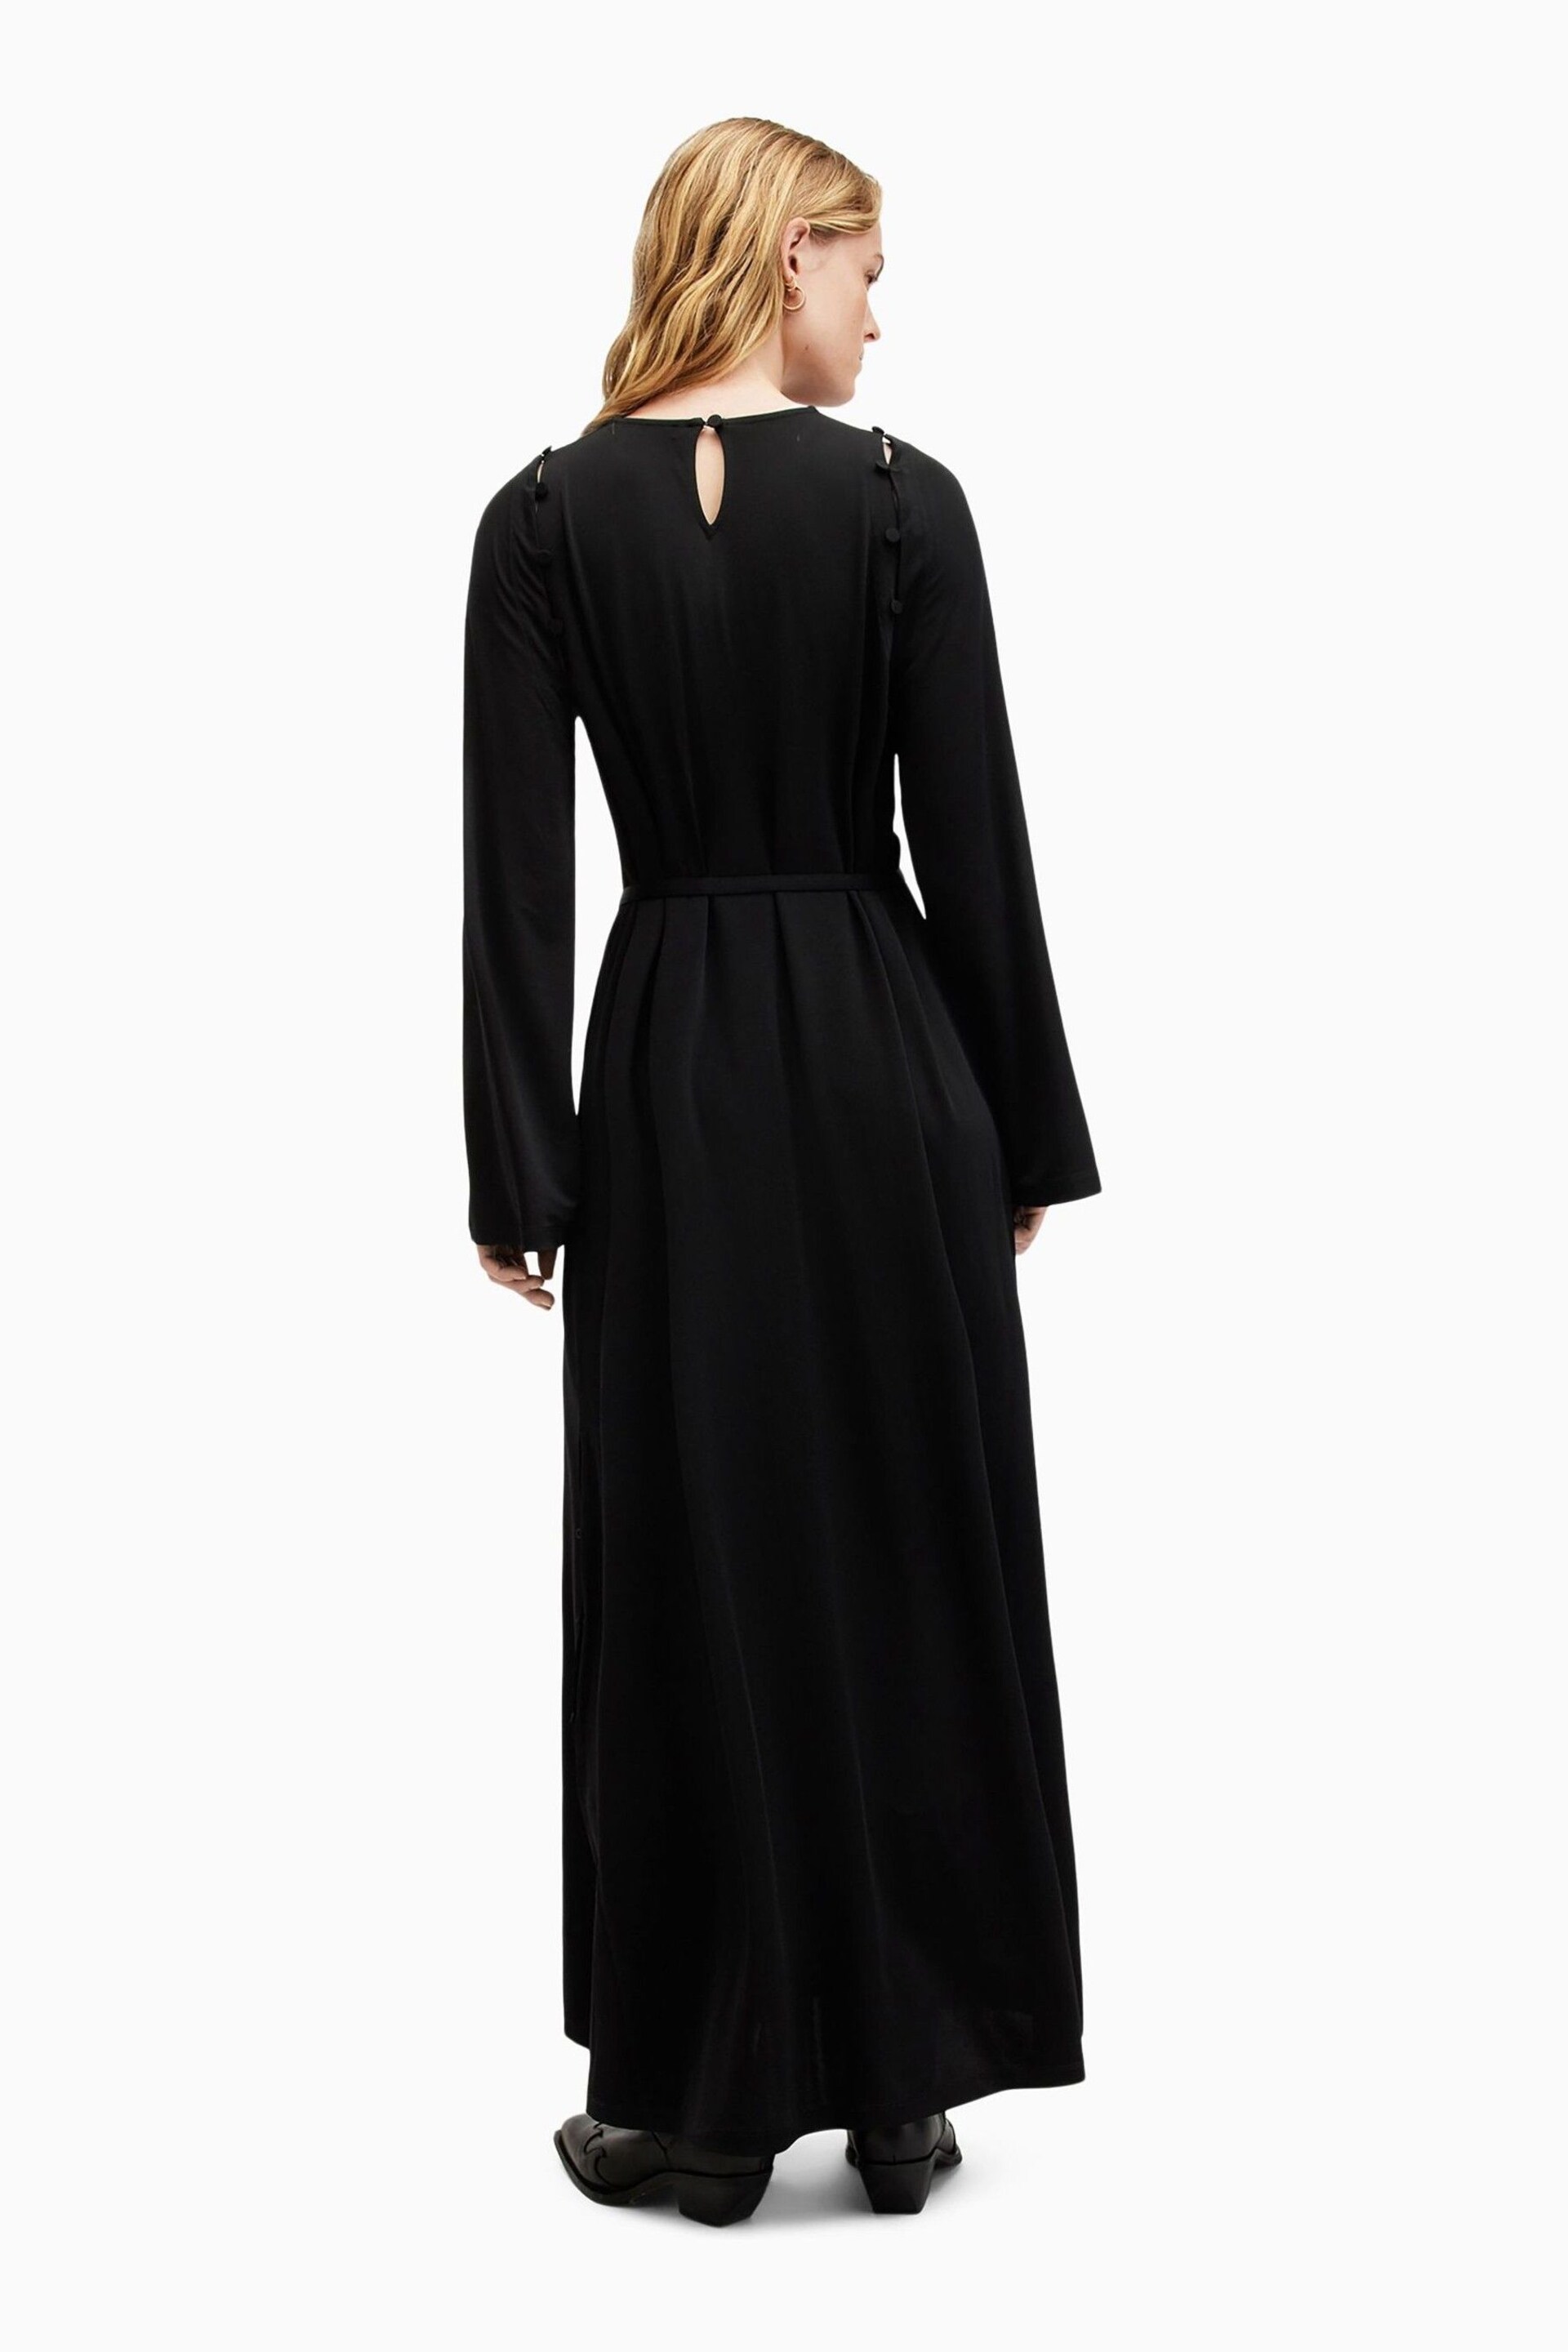 AllSaints Black Susannah Dress - Image 2 of 8